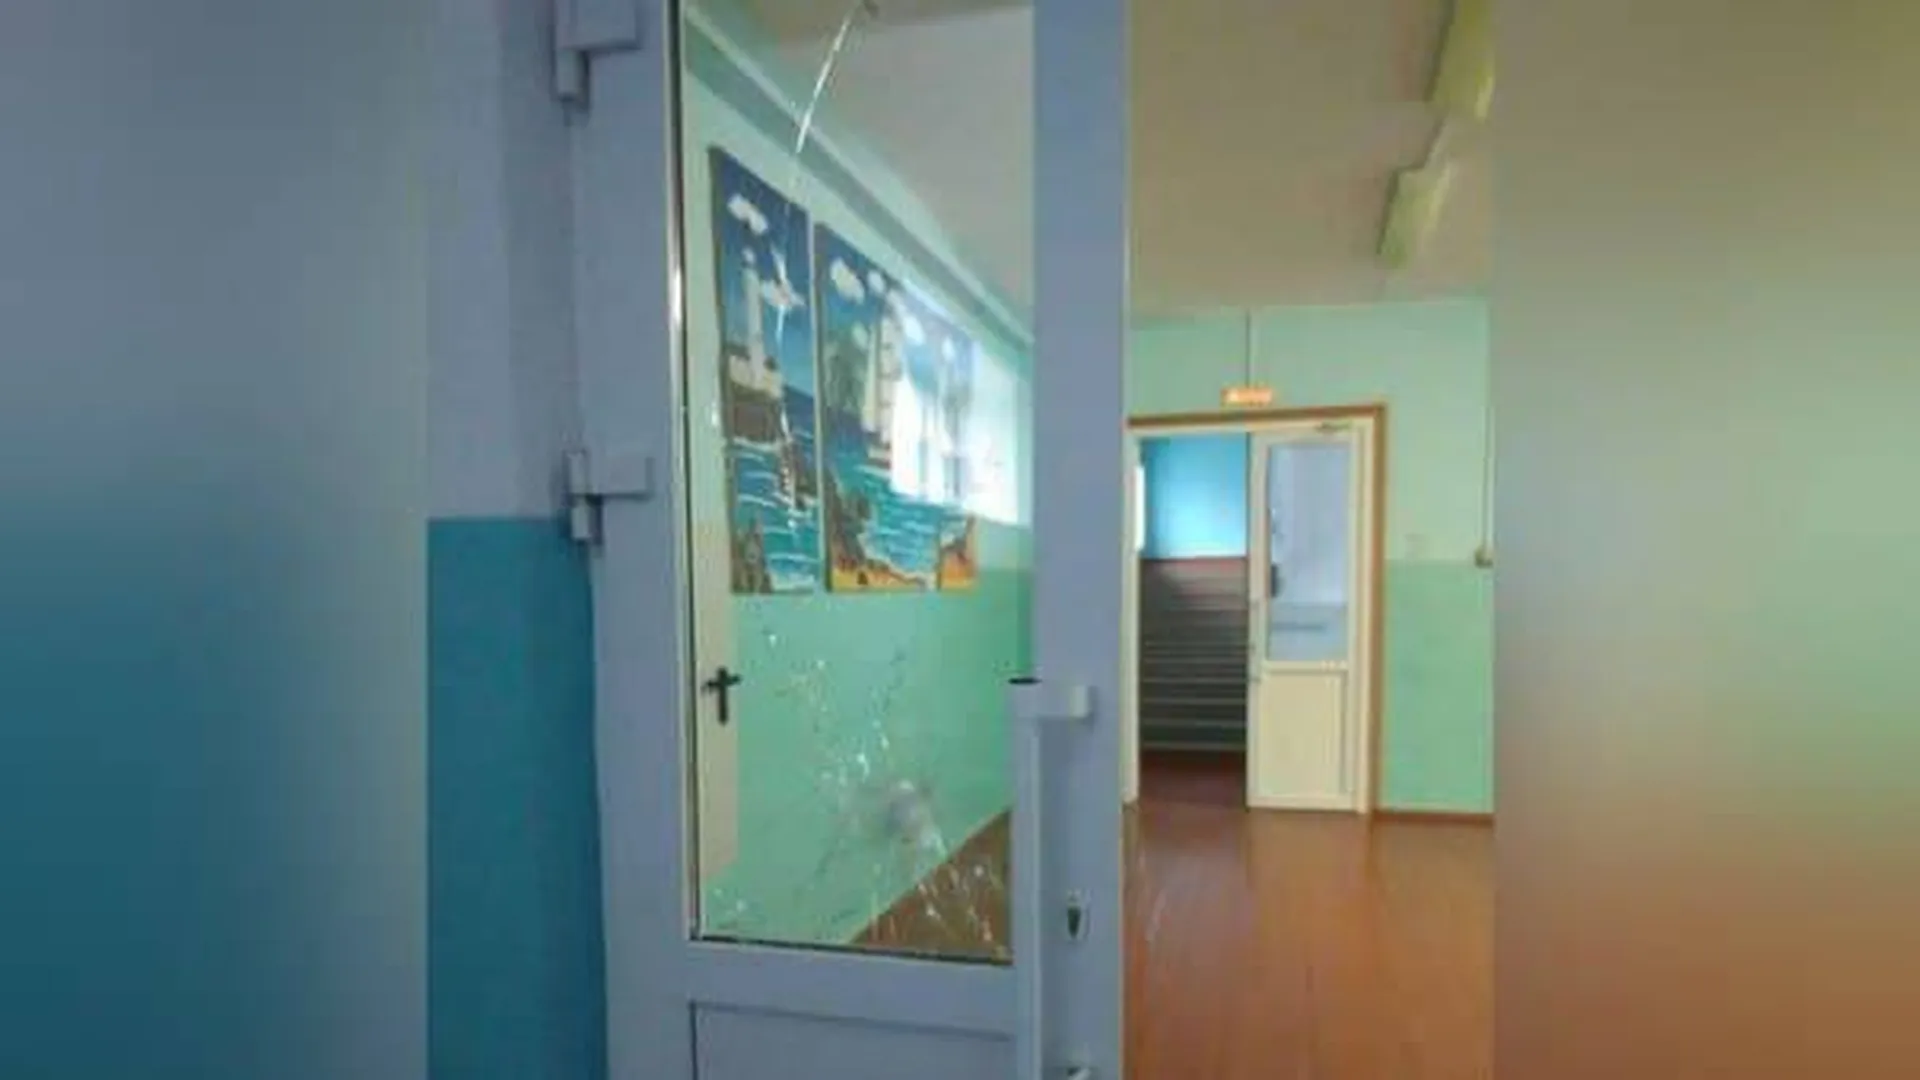 Директор школы под Пермью рассказала, как убедила шестиклассника прекратить стрельбу